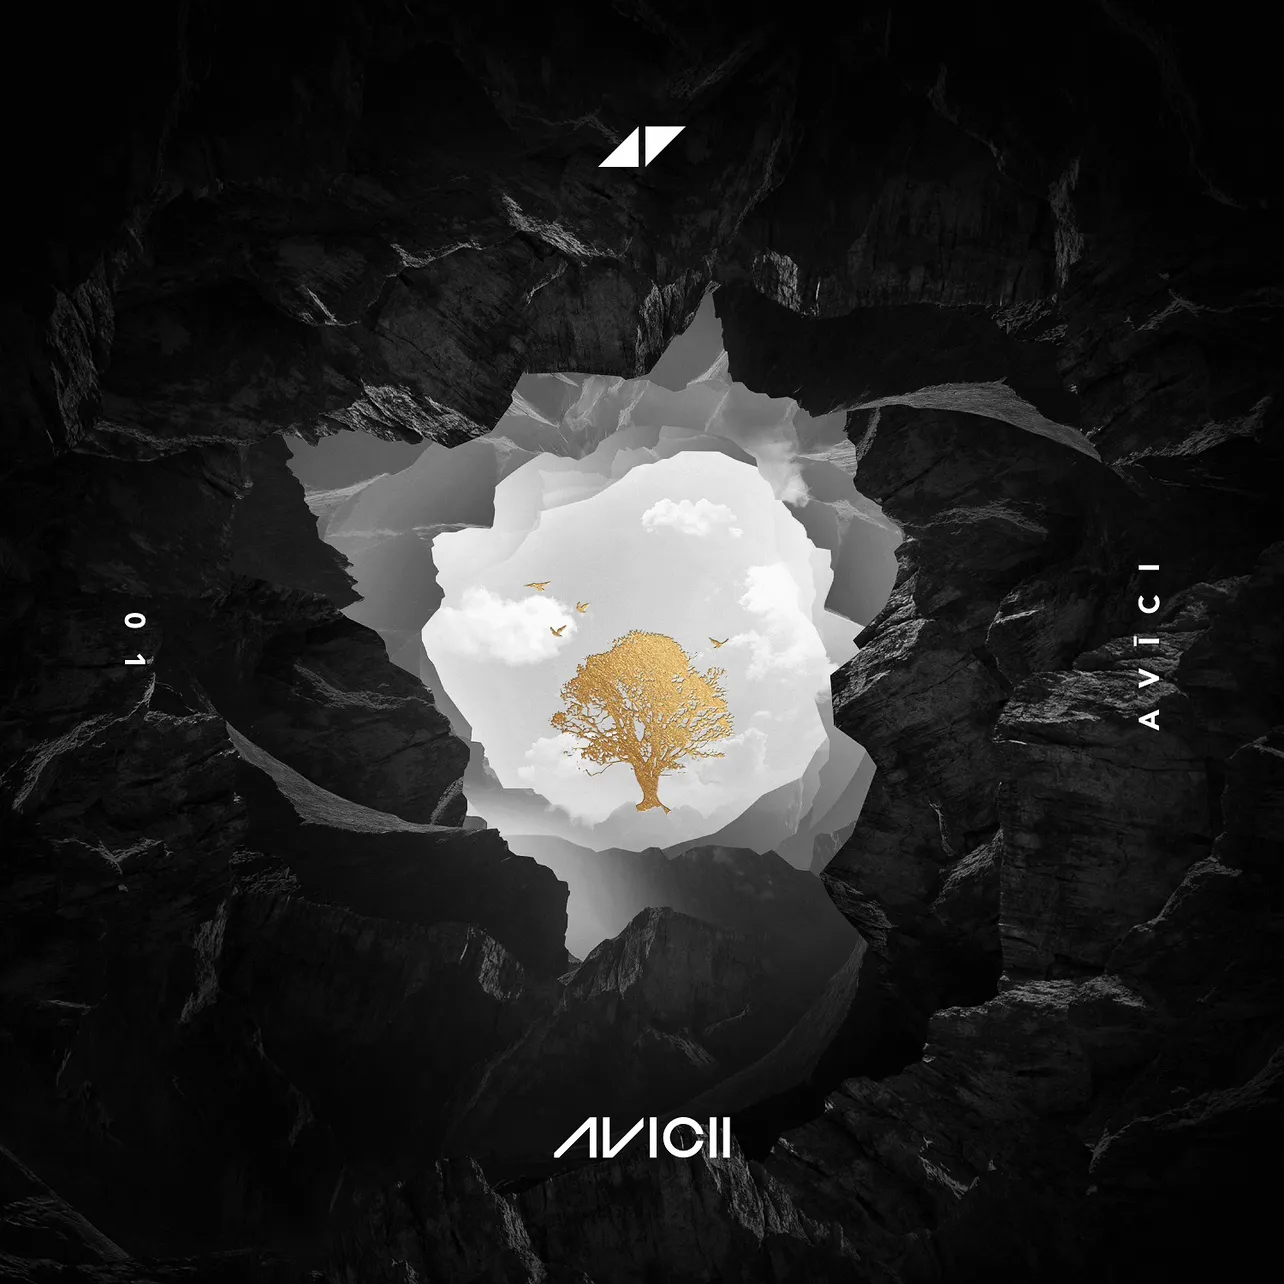 世界を躍らせるプロデューサー Aviciiから謎の黒い箱が届く 新曲6曲入りデジタルep Avici をリリース Dancefact ダンスファクト